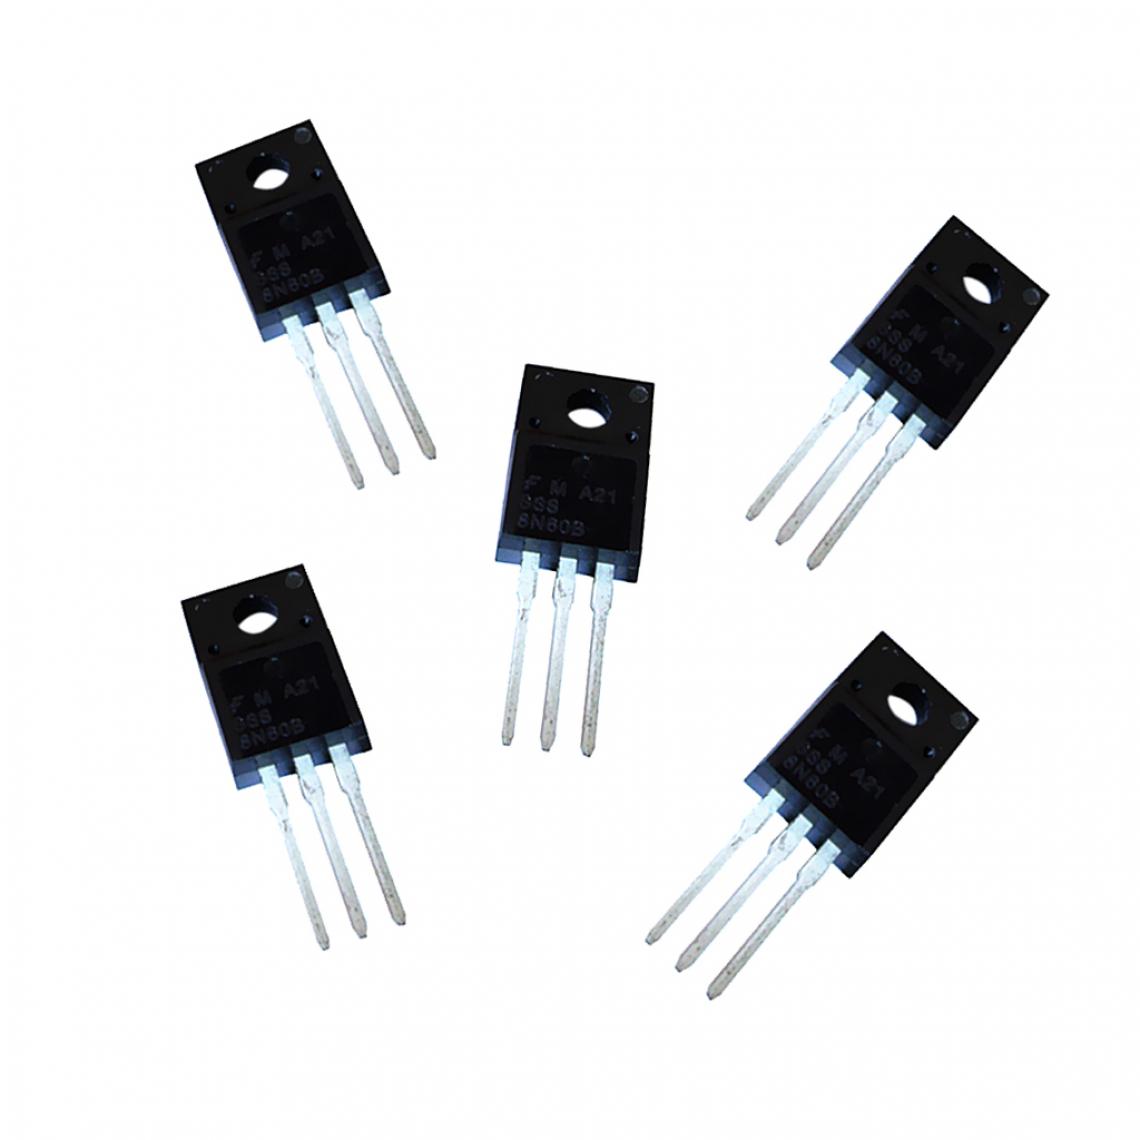 marque generique - 5pcs Transistors à Effet de Champ MOSFET 600V 8A 3 Pin TO-220 8N60 - Appareils de mesure